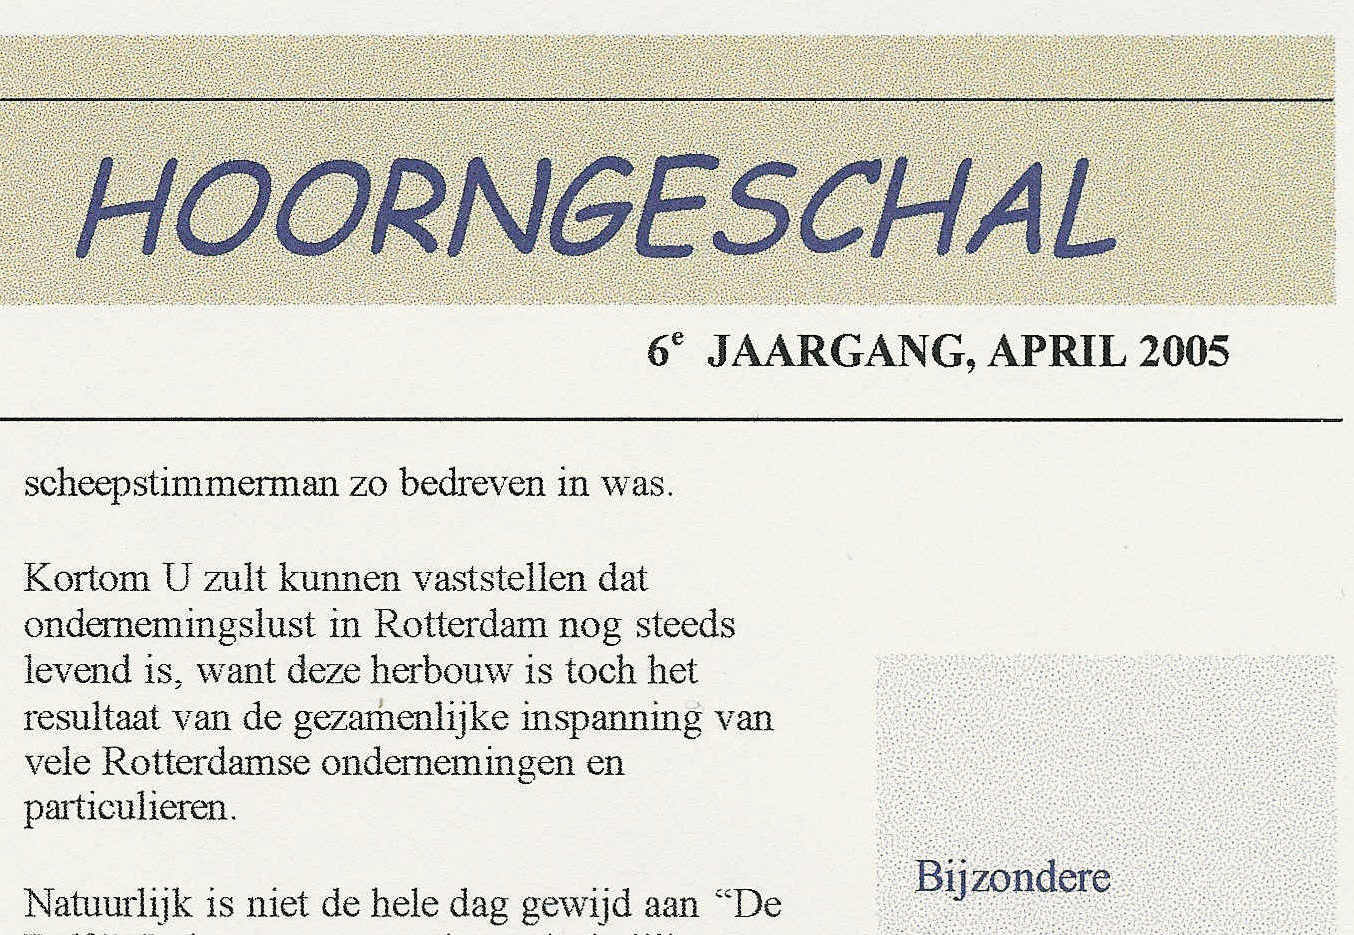 Hoorngeschakortl (609K)